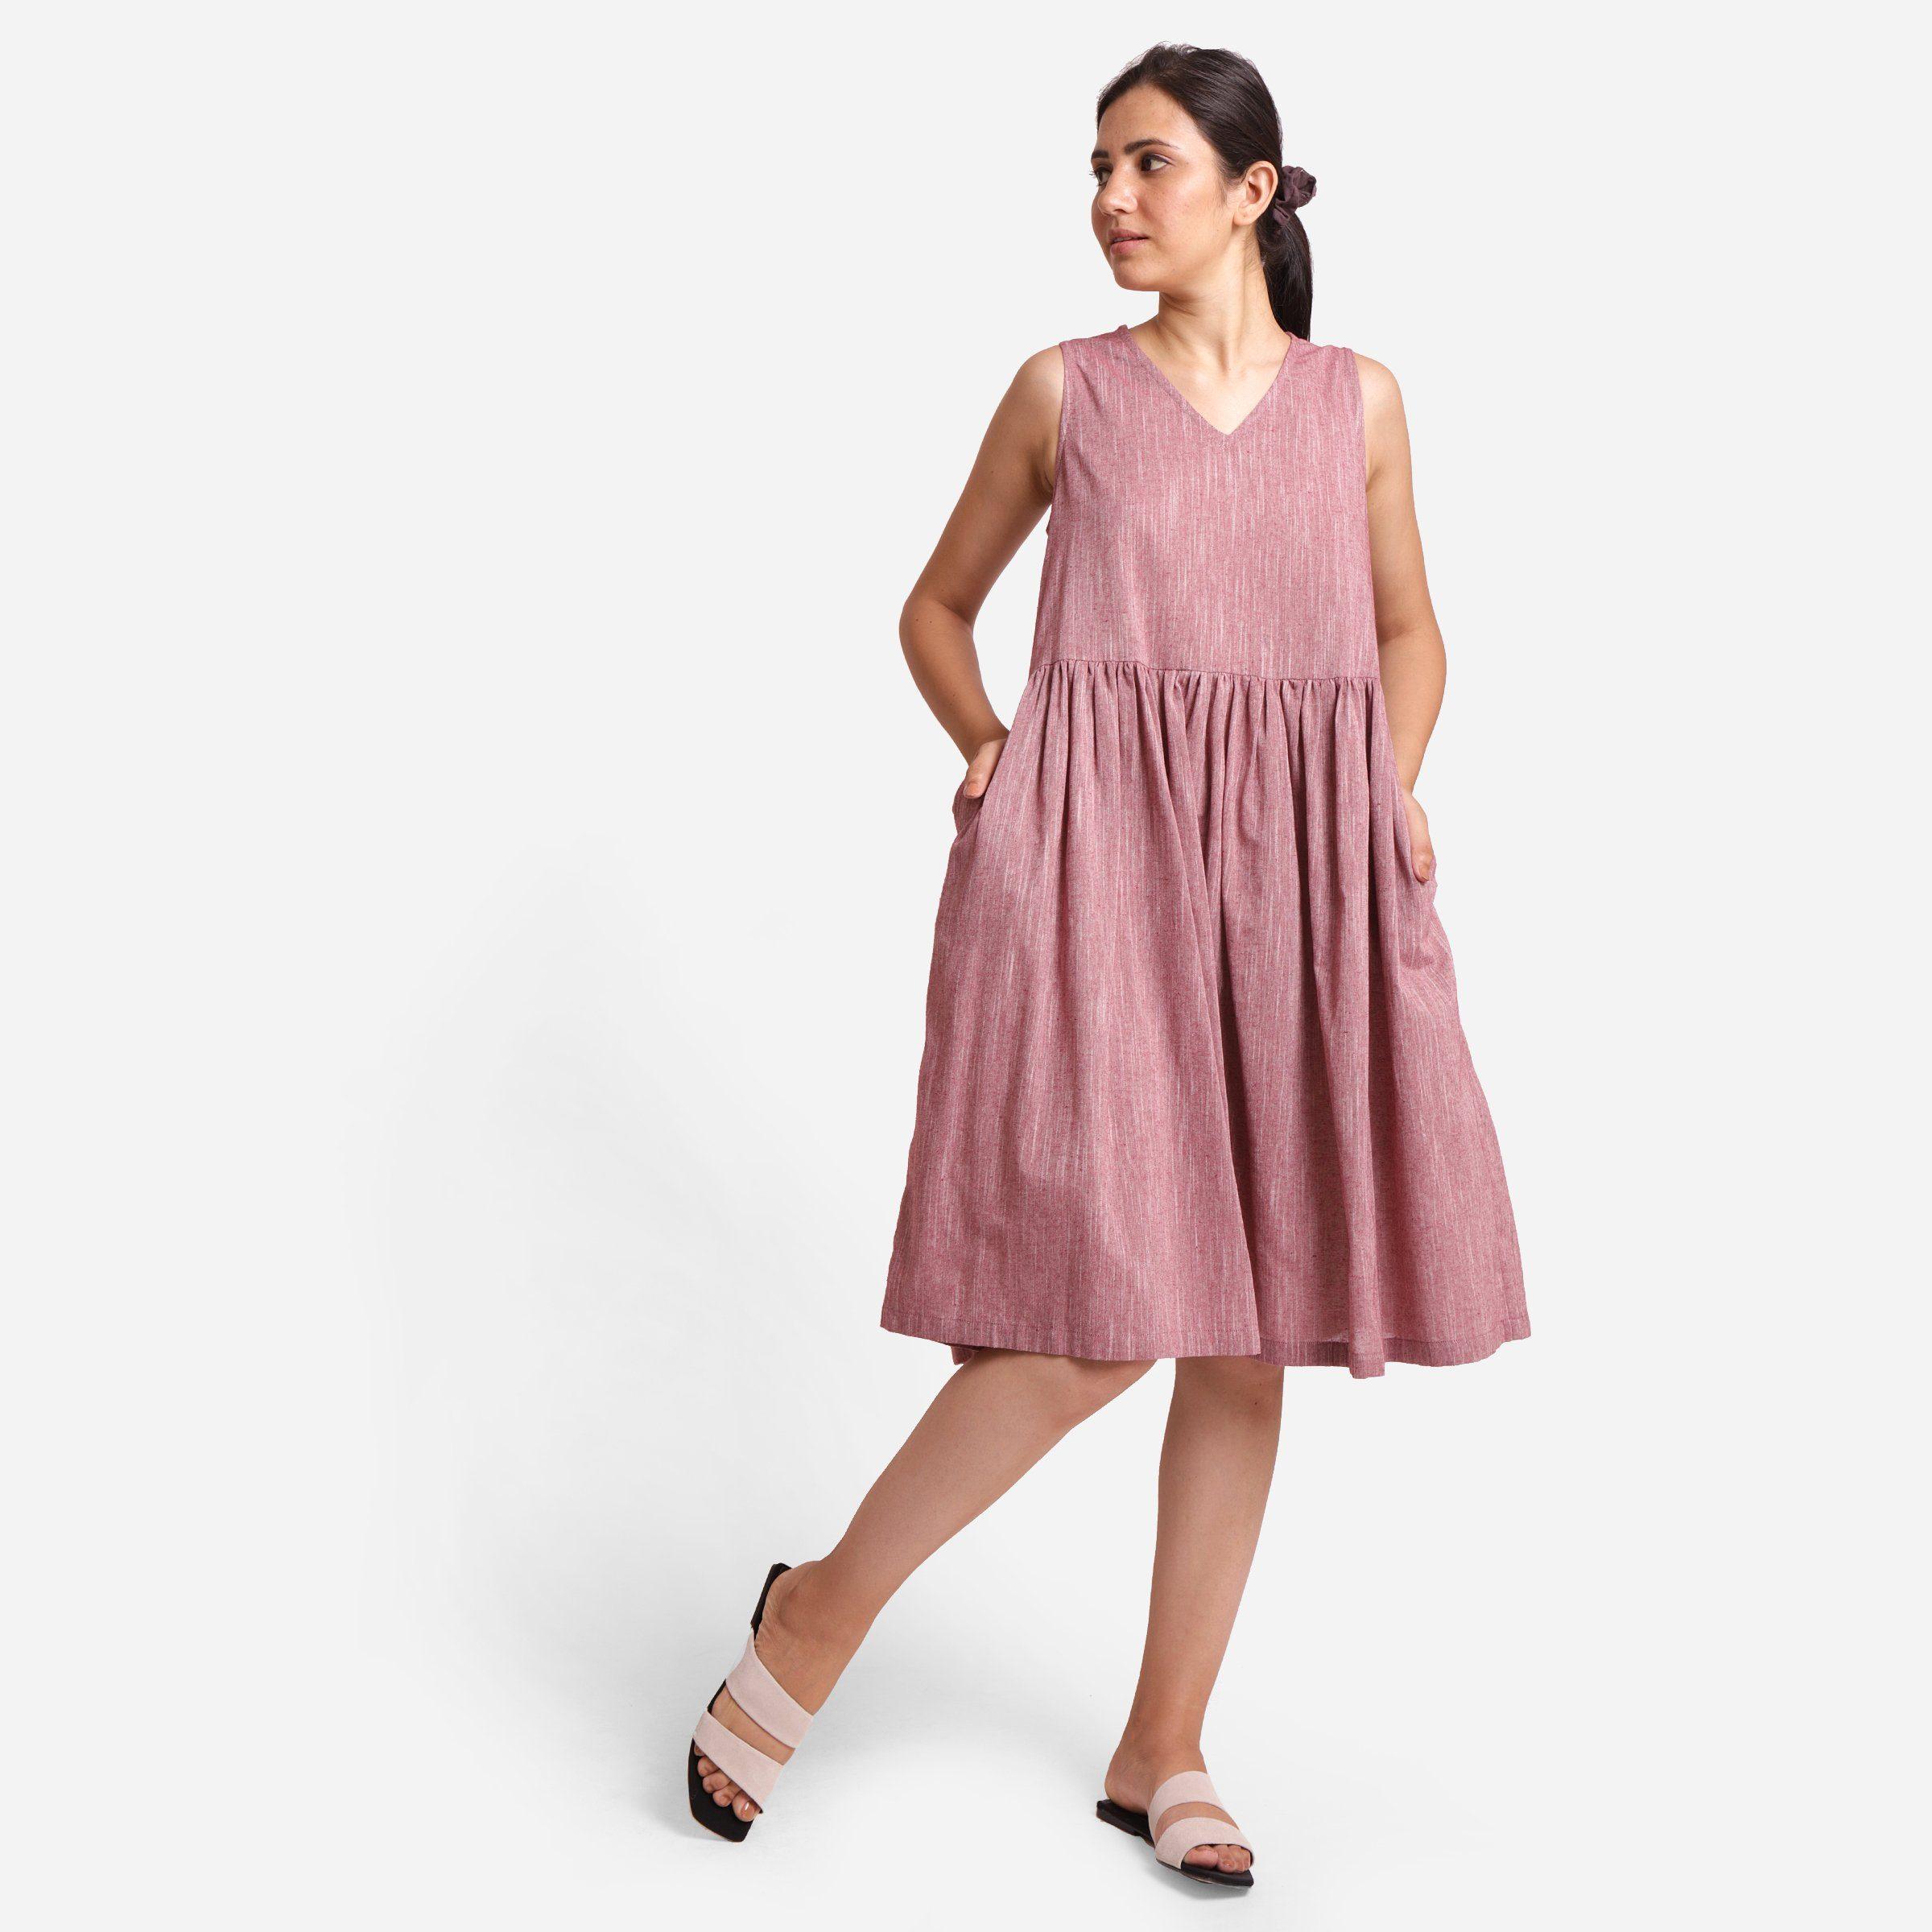 Fit & Flare Dresses, Shop Ladies Dresses Online